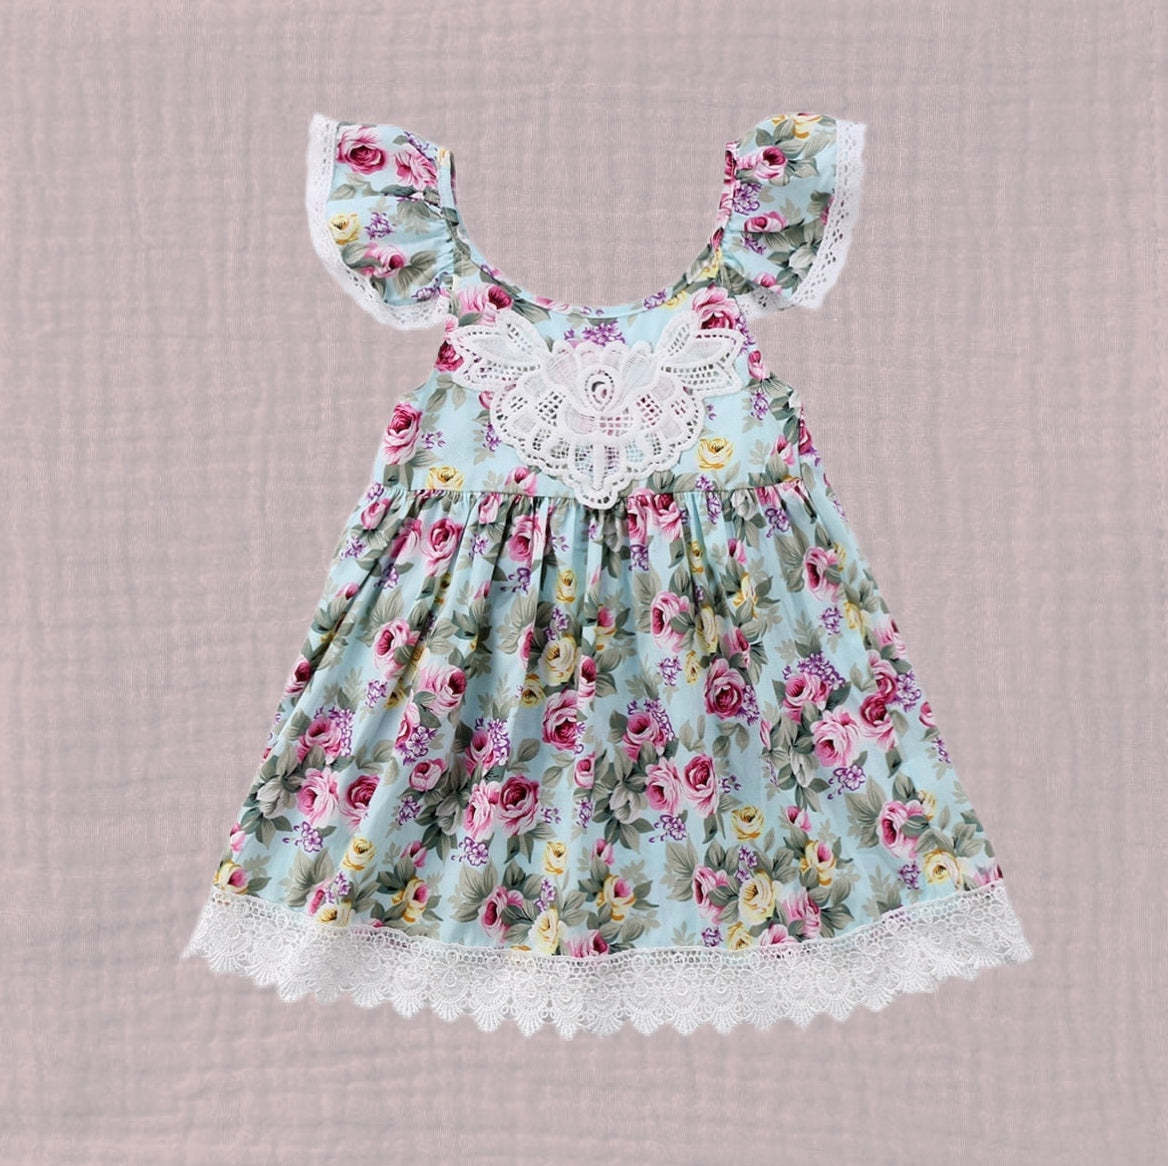 Boho Toddler Girls Floral Easter Dress Lace Detail Backless